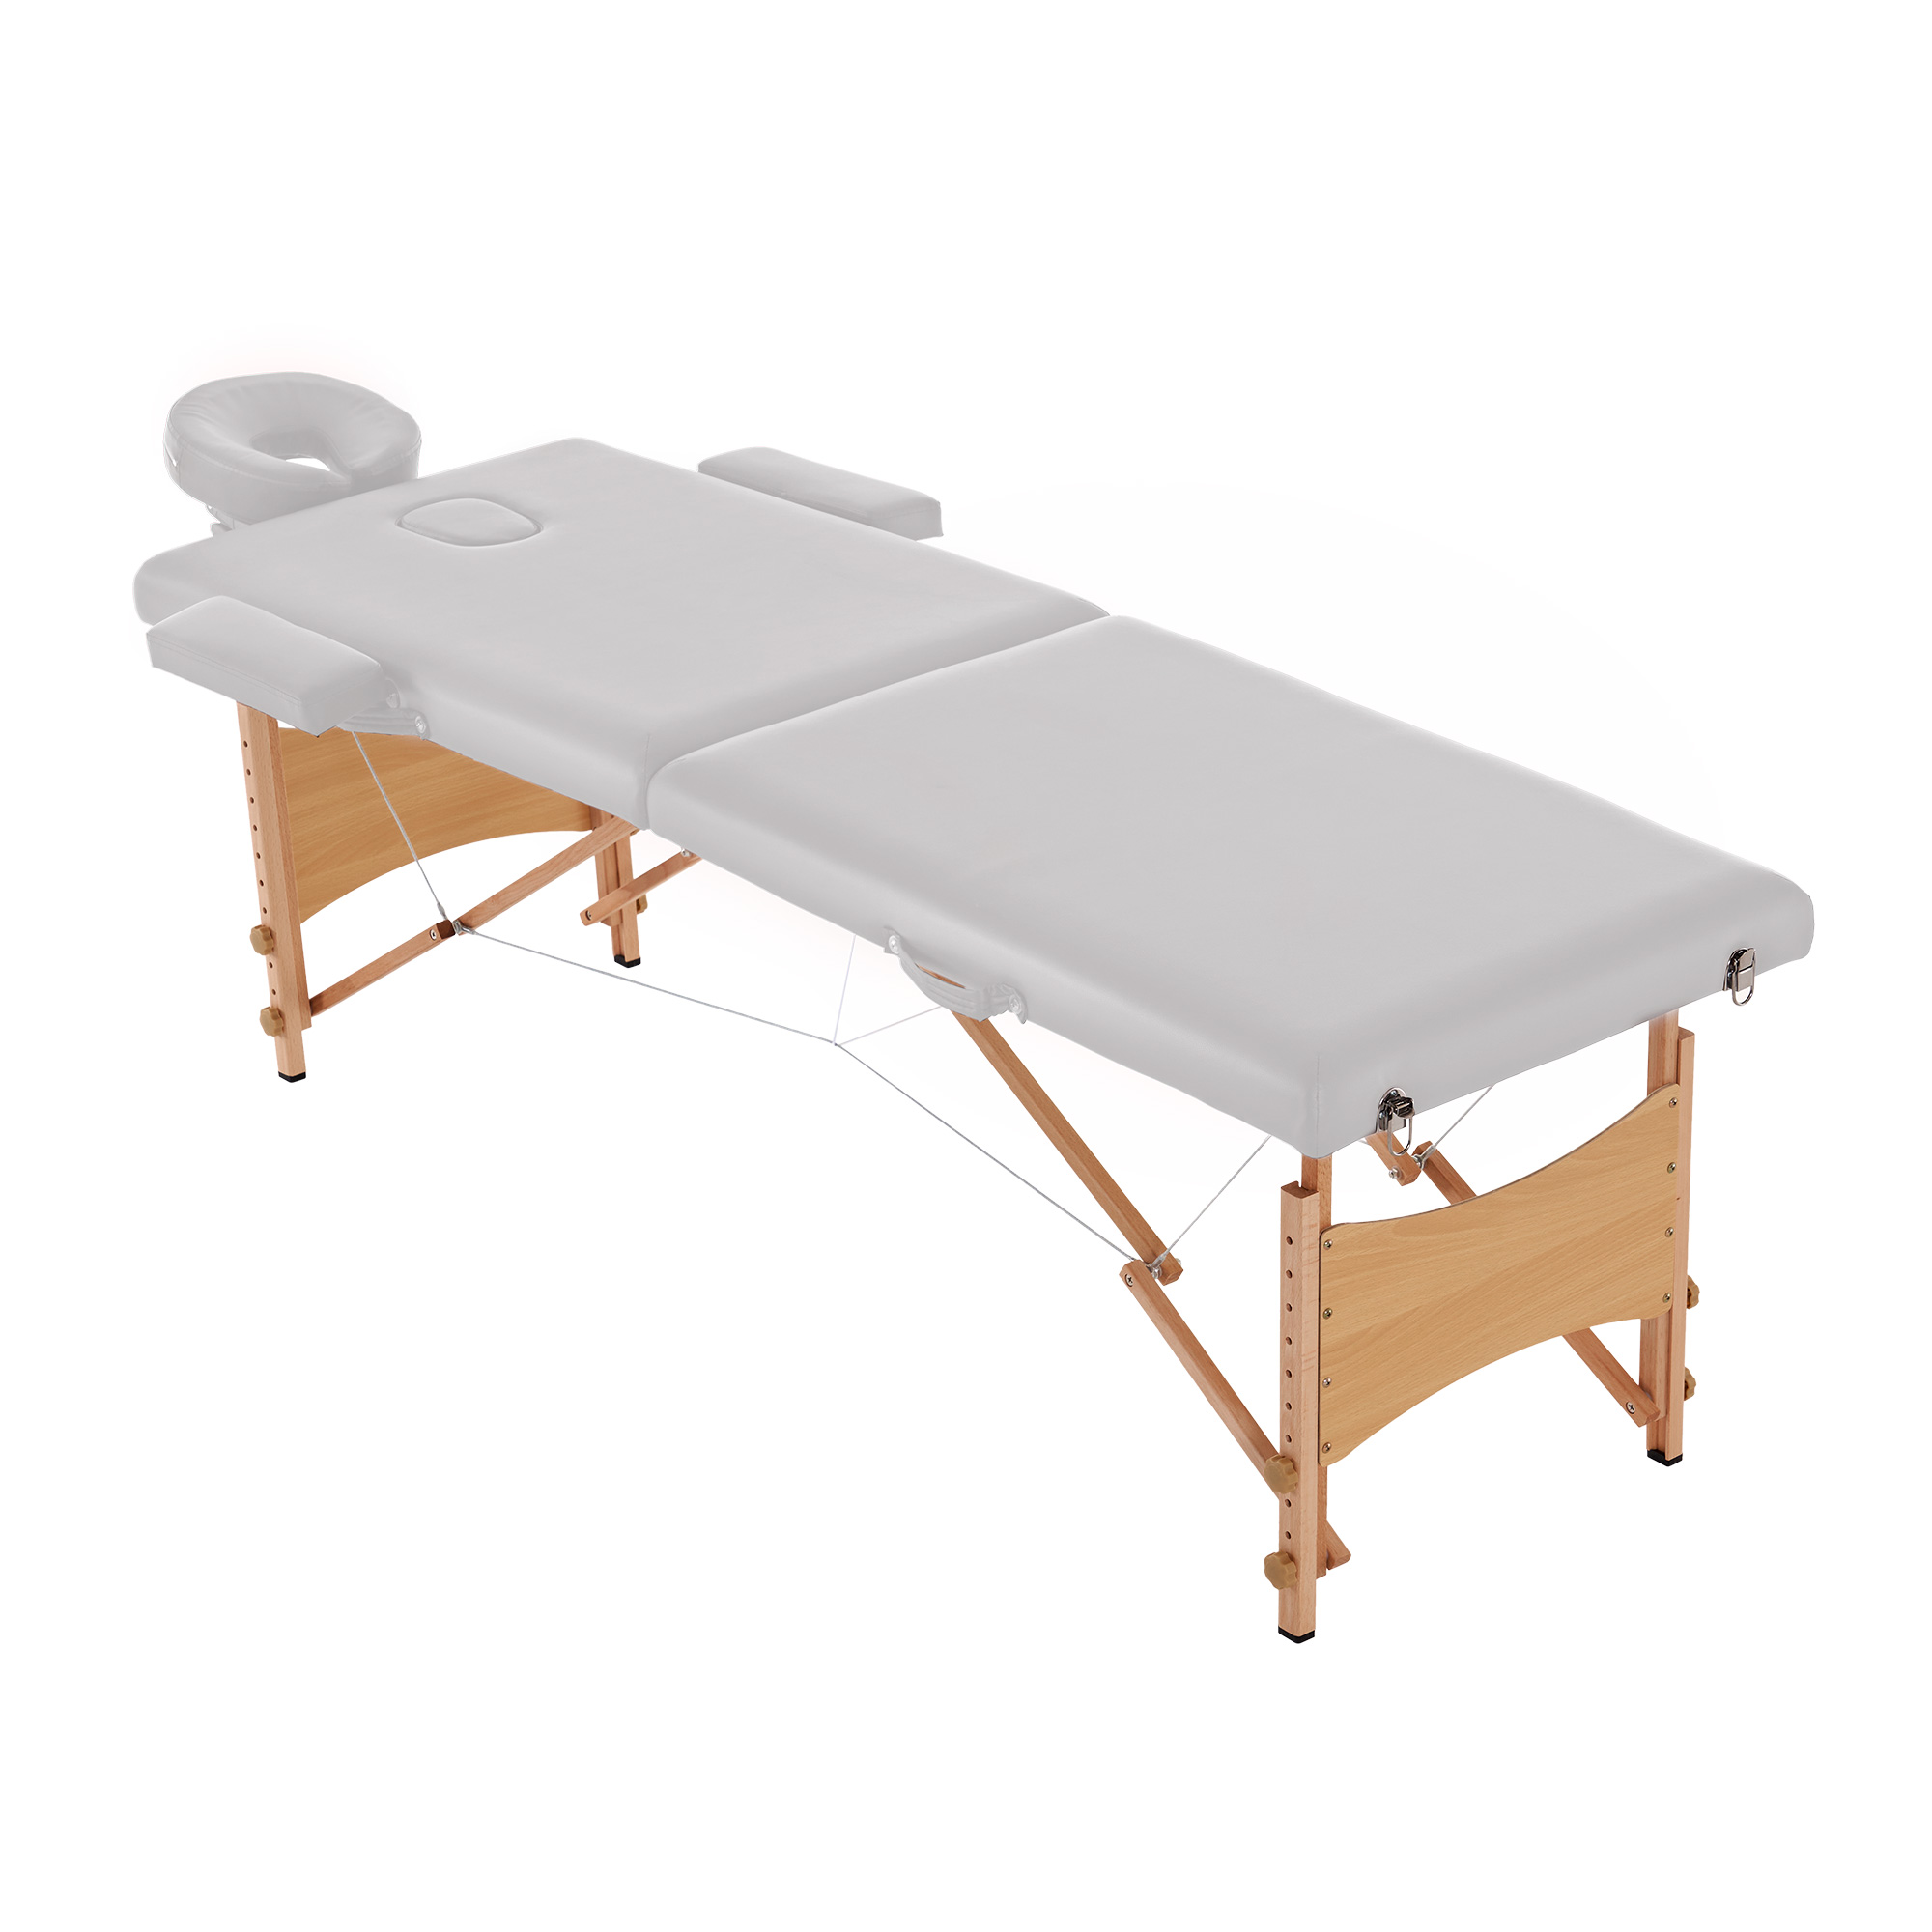 マッサージベッド プラスサイズ コンパクト 折りたたみ 施術台 整体ベッド マッサージ用 ABS